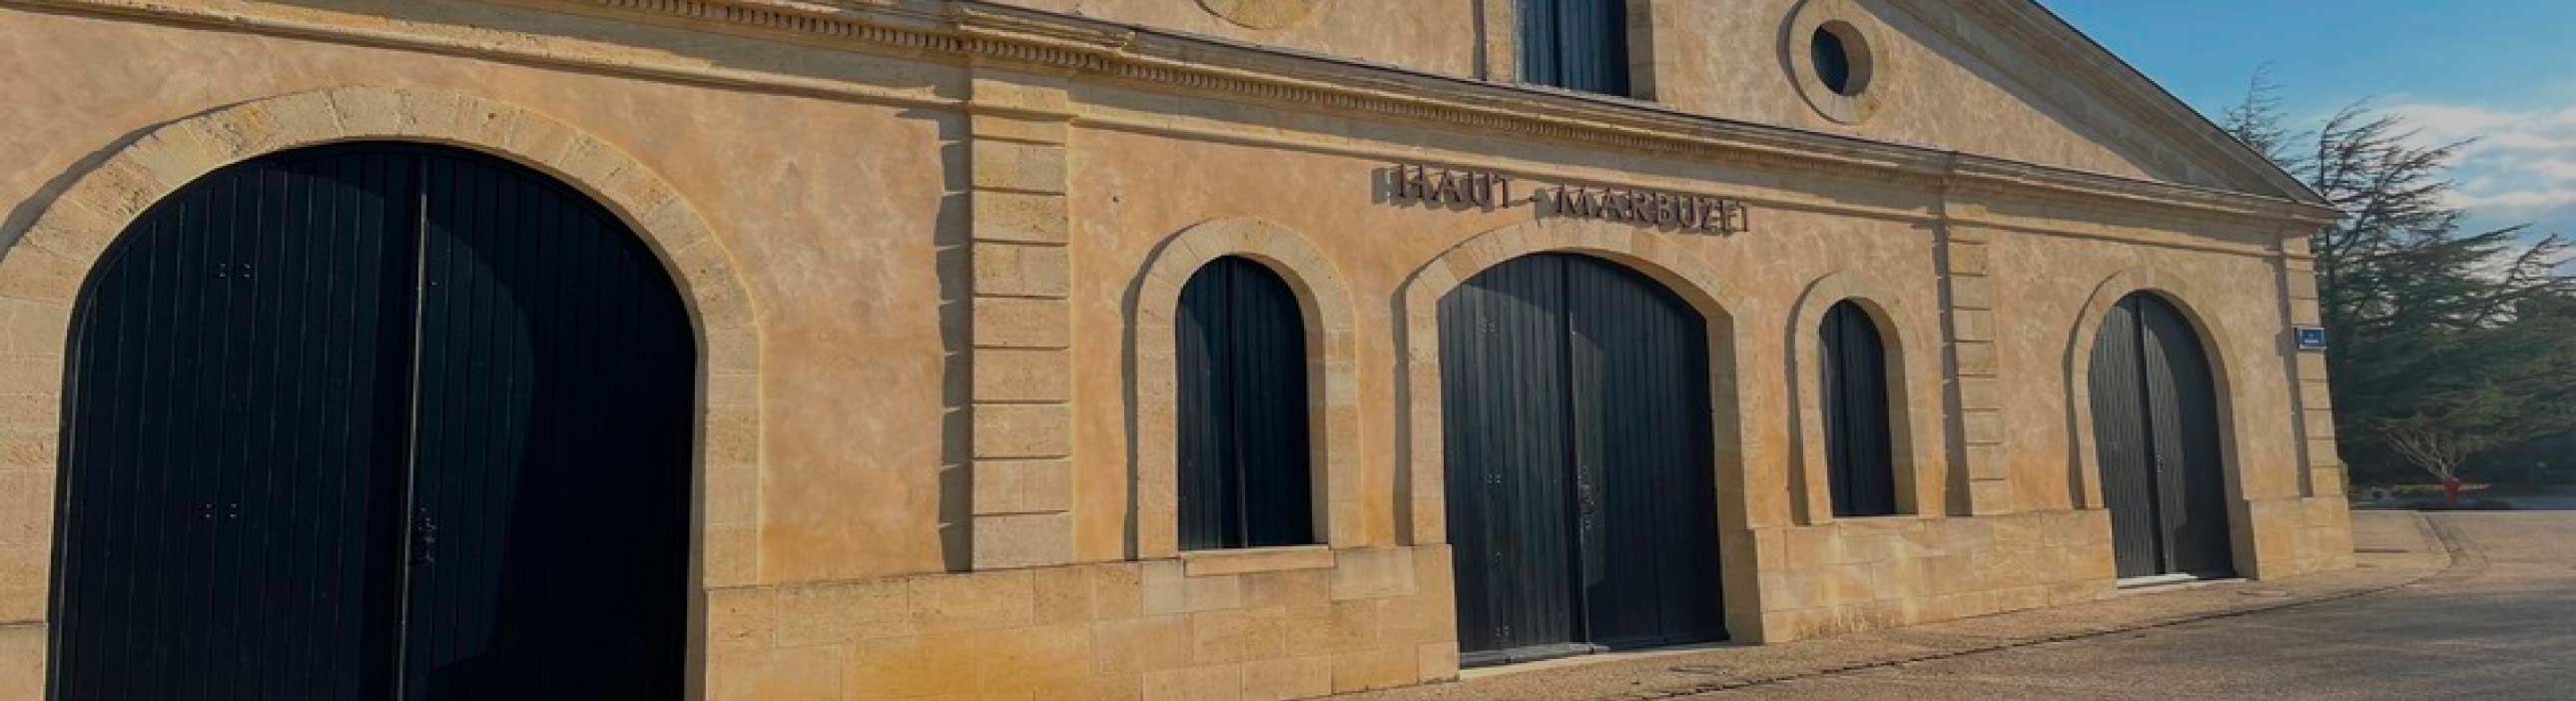 Château Haut Marbuzet